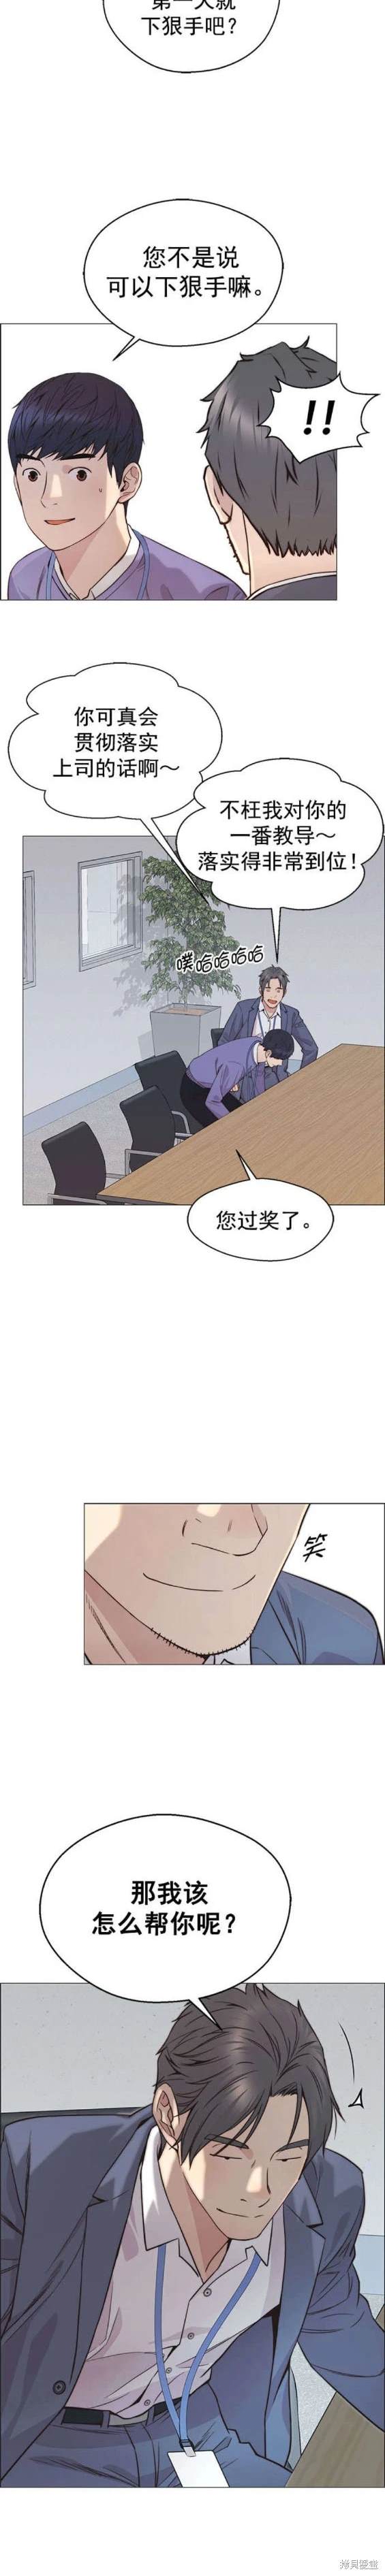 男子汉漫画,第156话19图